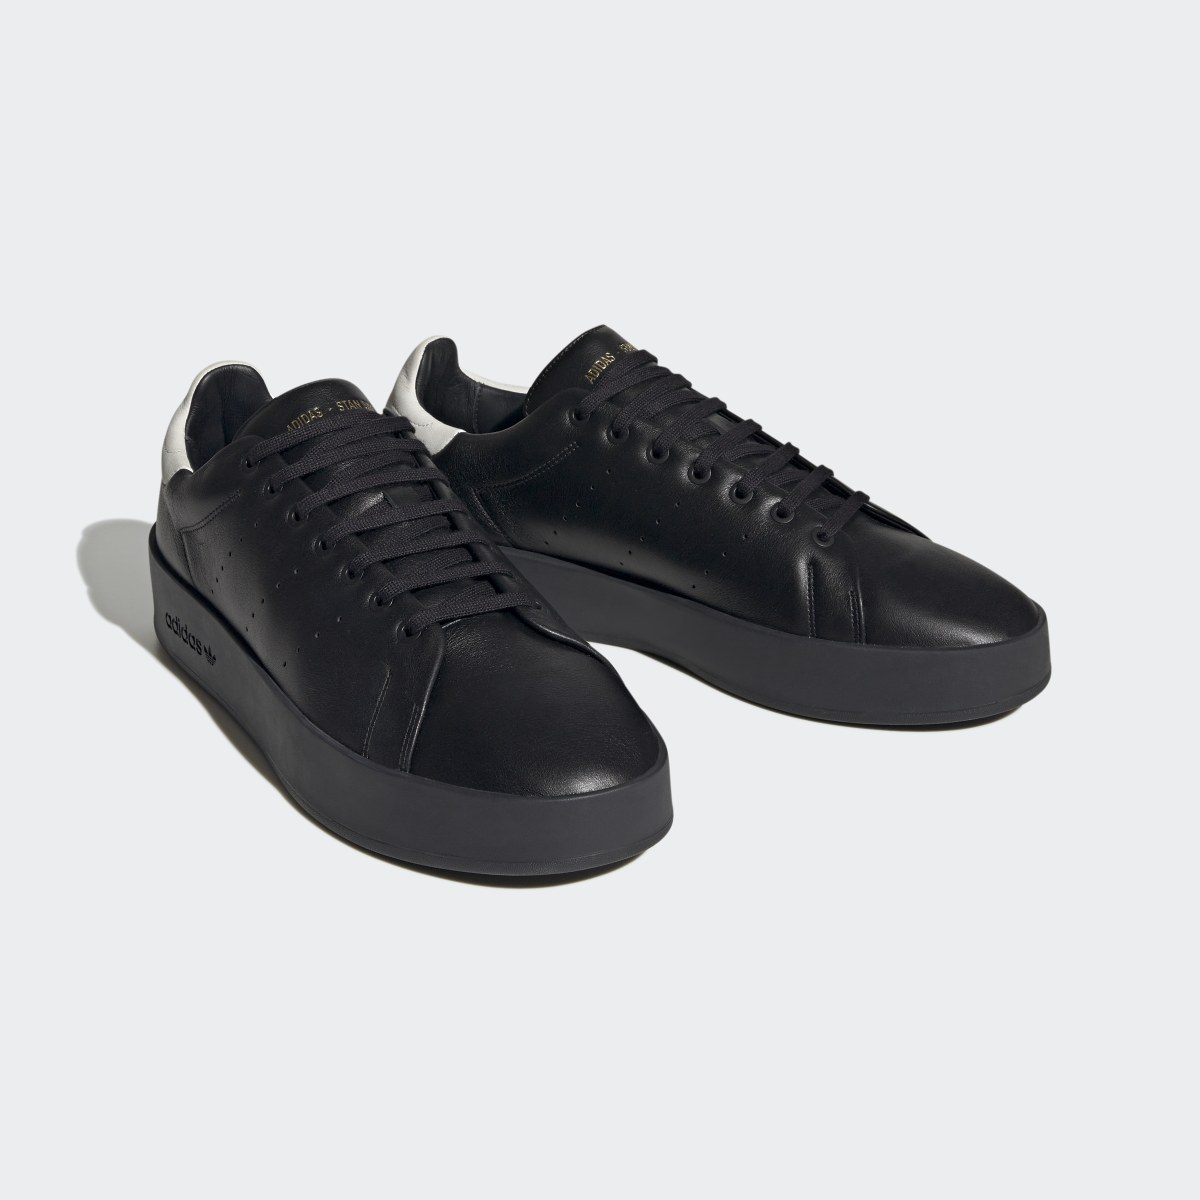 Adidas Stan Smith Recon Schuh. 5